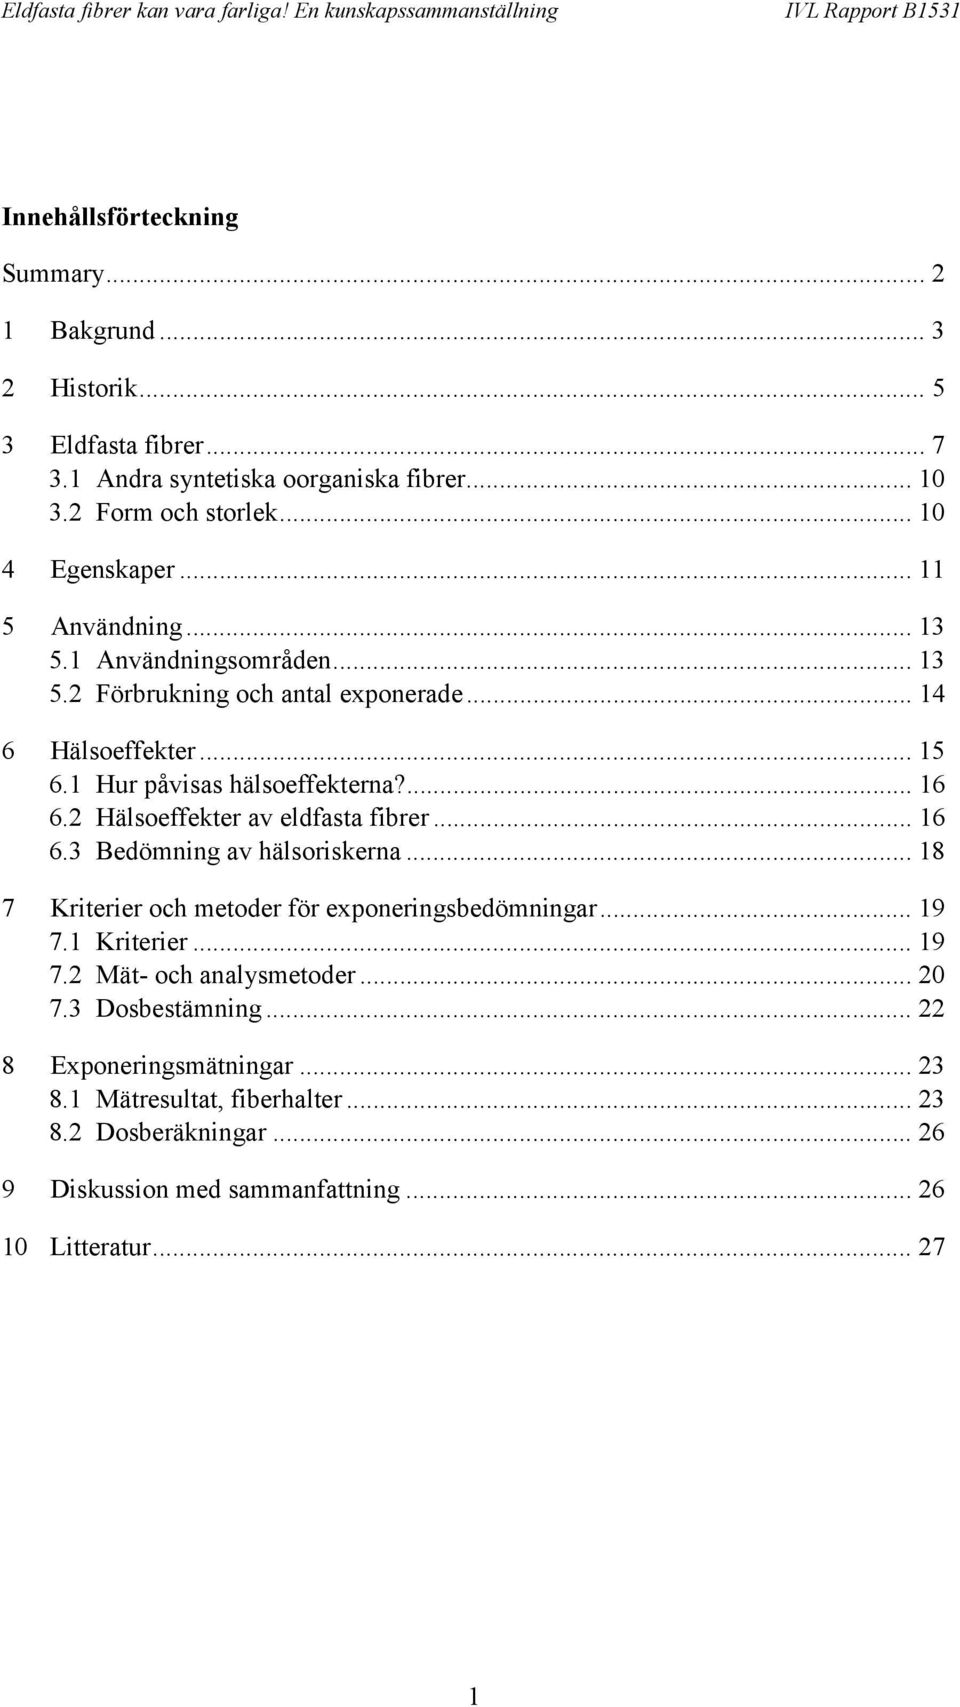 2 Hälsoeffekter av eldfasta fibrer... 16 6.3 Bedömning av hälsoriskerna... 18 7 Kriterier och metoder för exponeringsbedömningar... 19 7.1 Kriterier... 19 7.2 Mät- och analysmetoder.